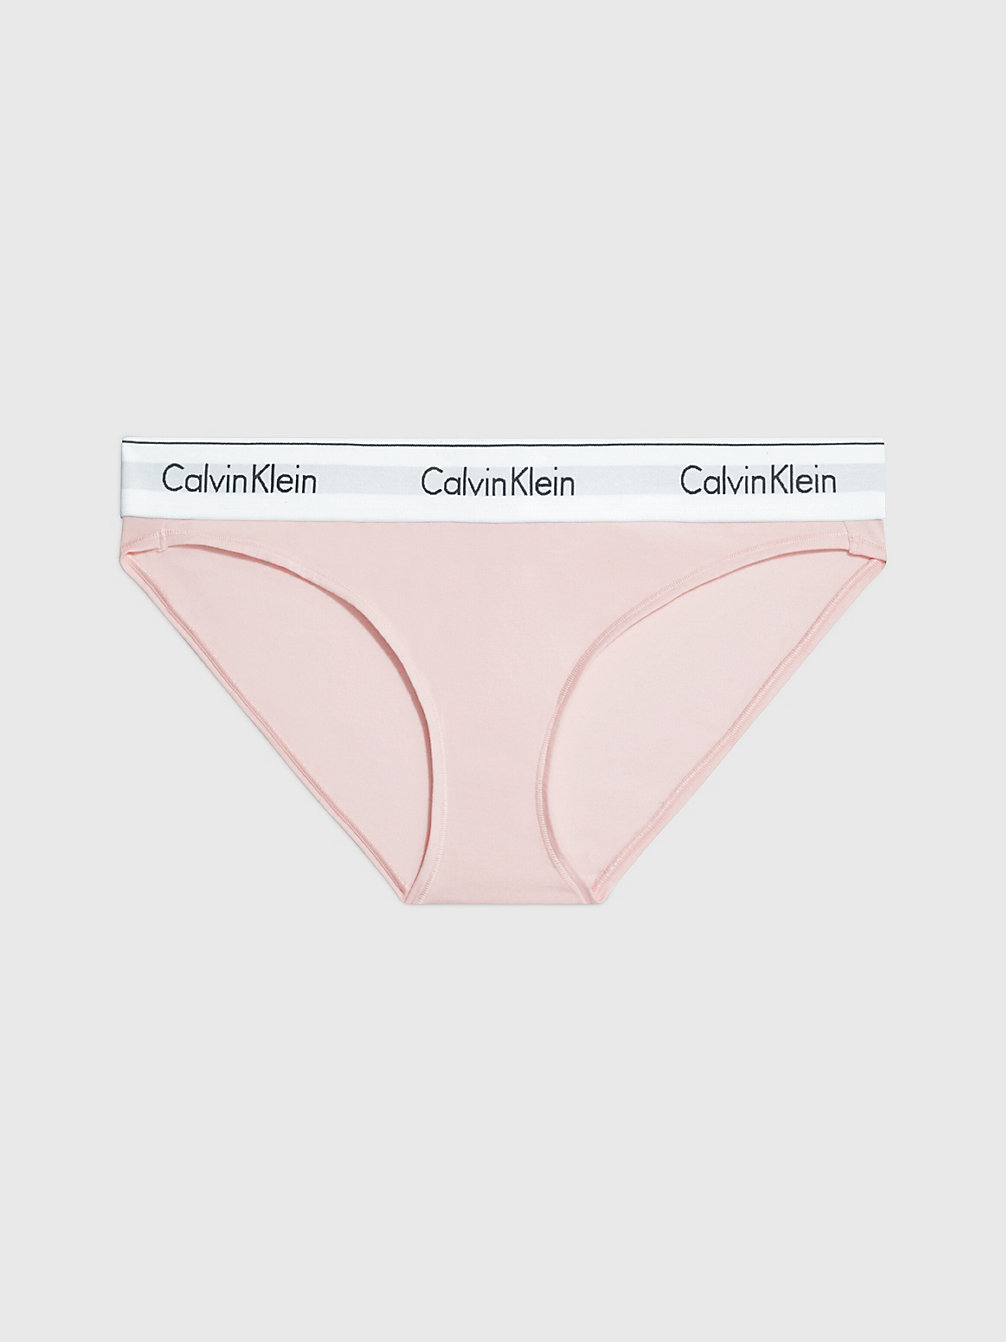 NYMPHS THIGH Slips - Modern Cotton undefined Damen Calvin Klein